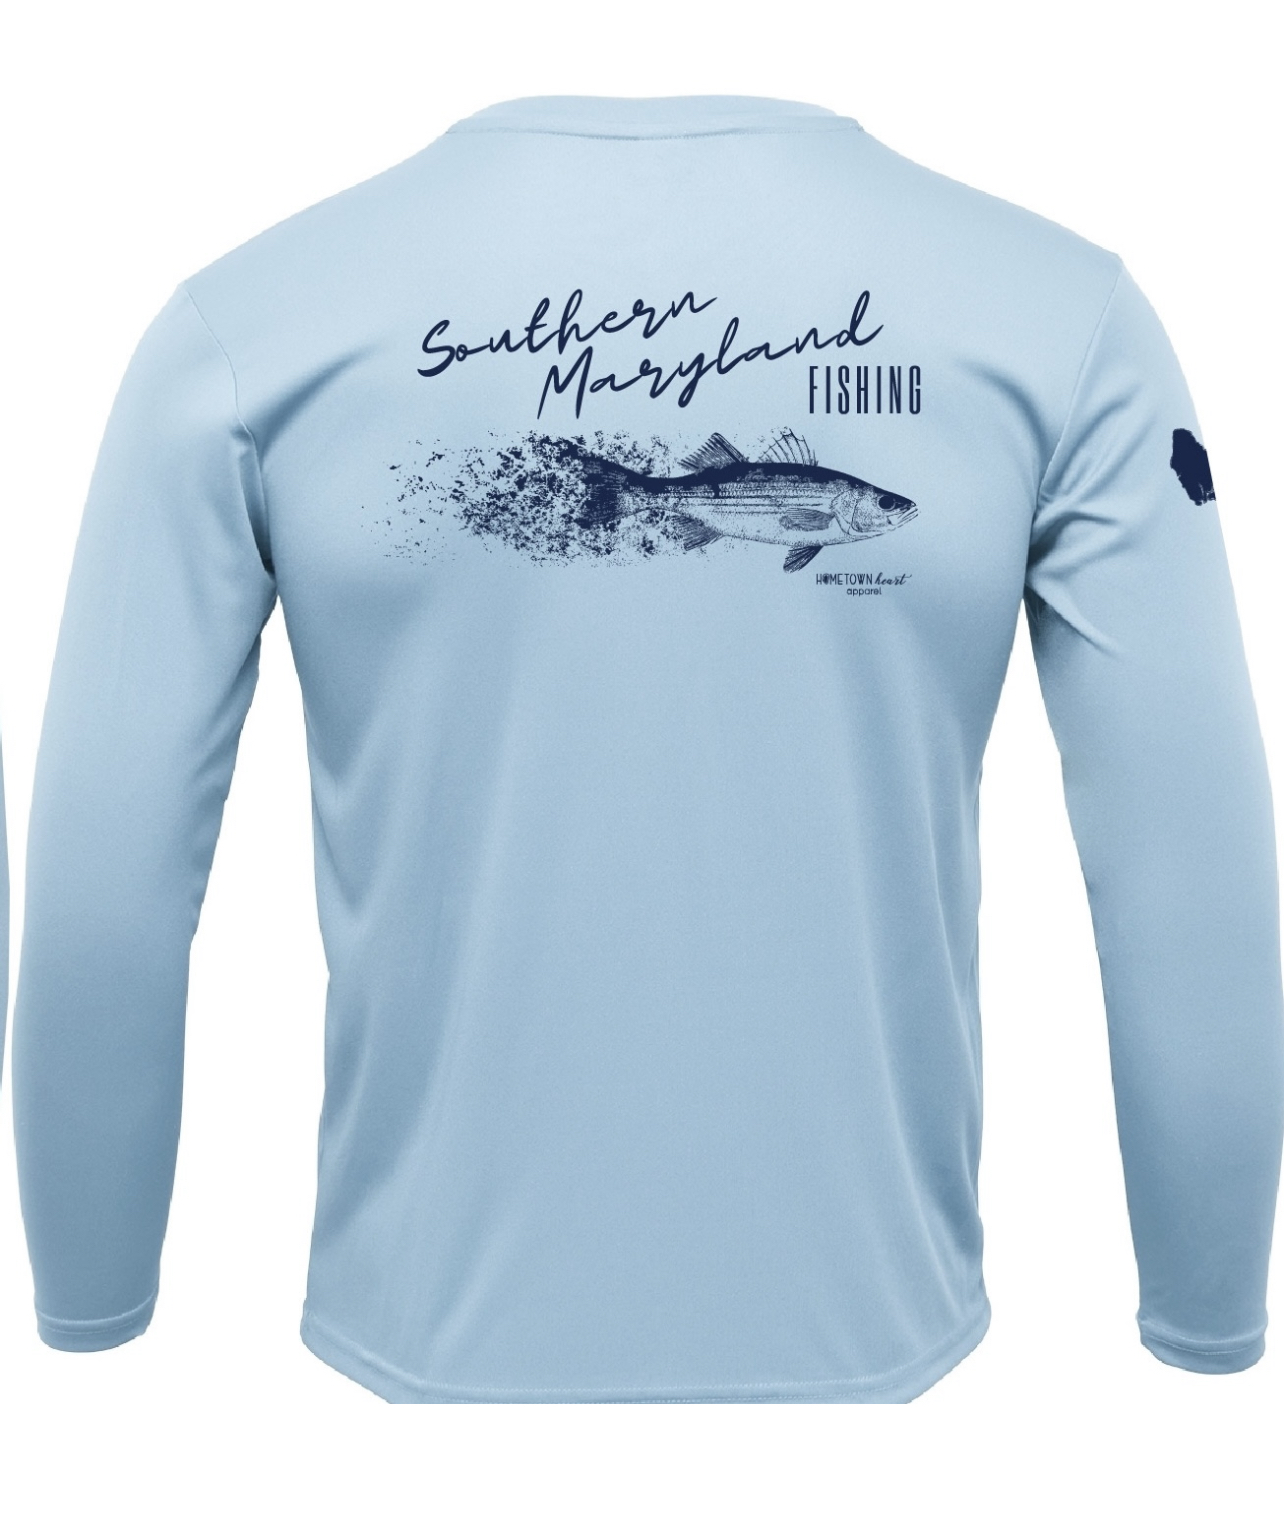 Southern Maryland Fishing Unisex Sun Shirt - ICE BLUE